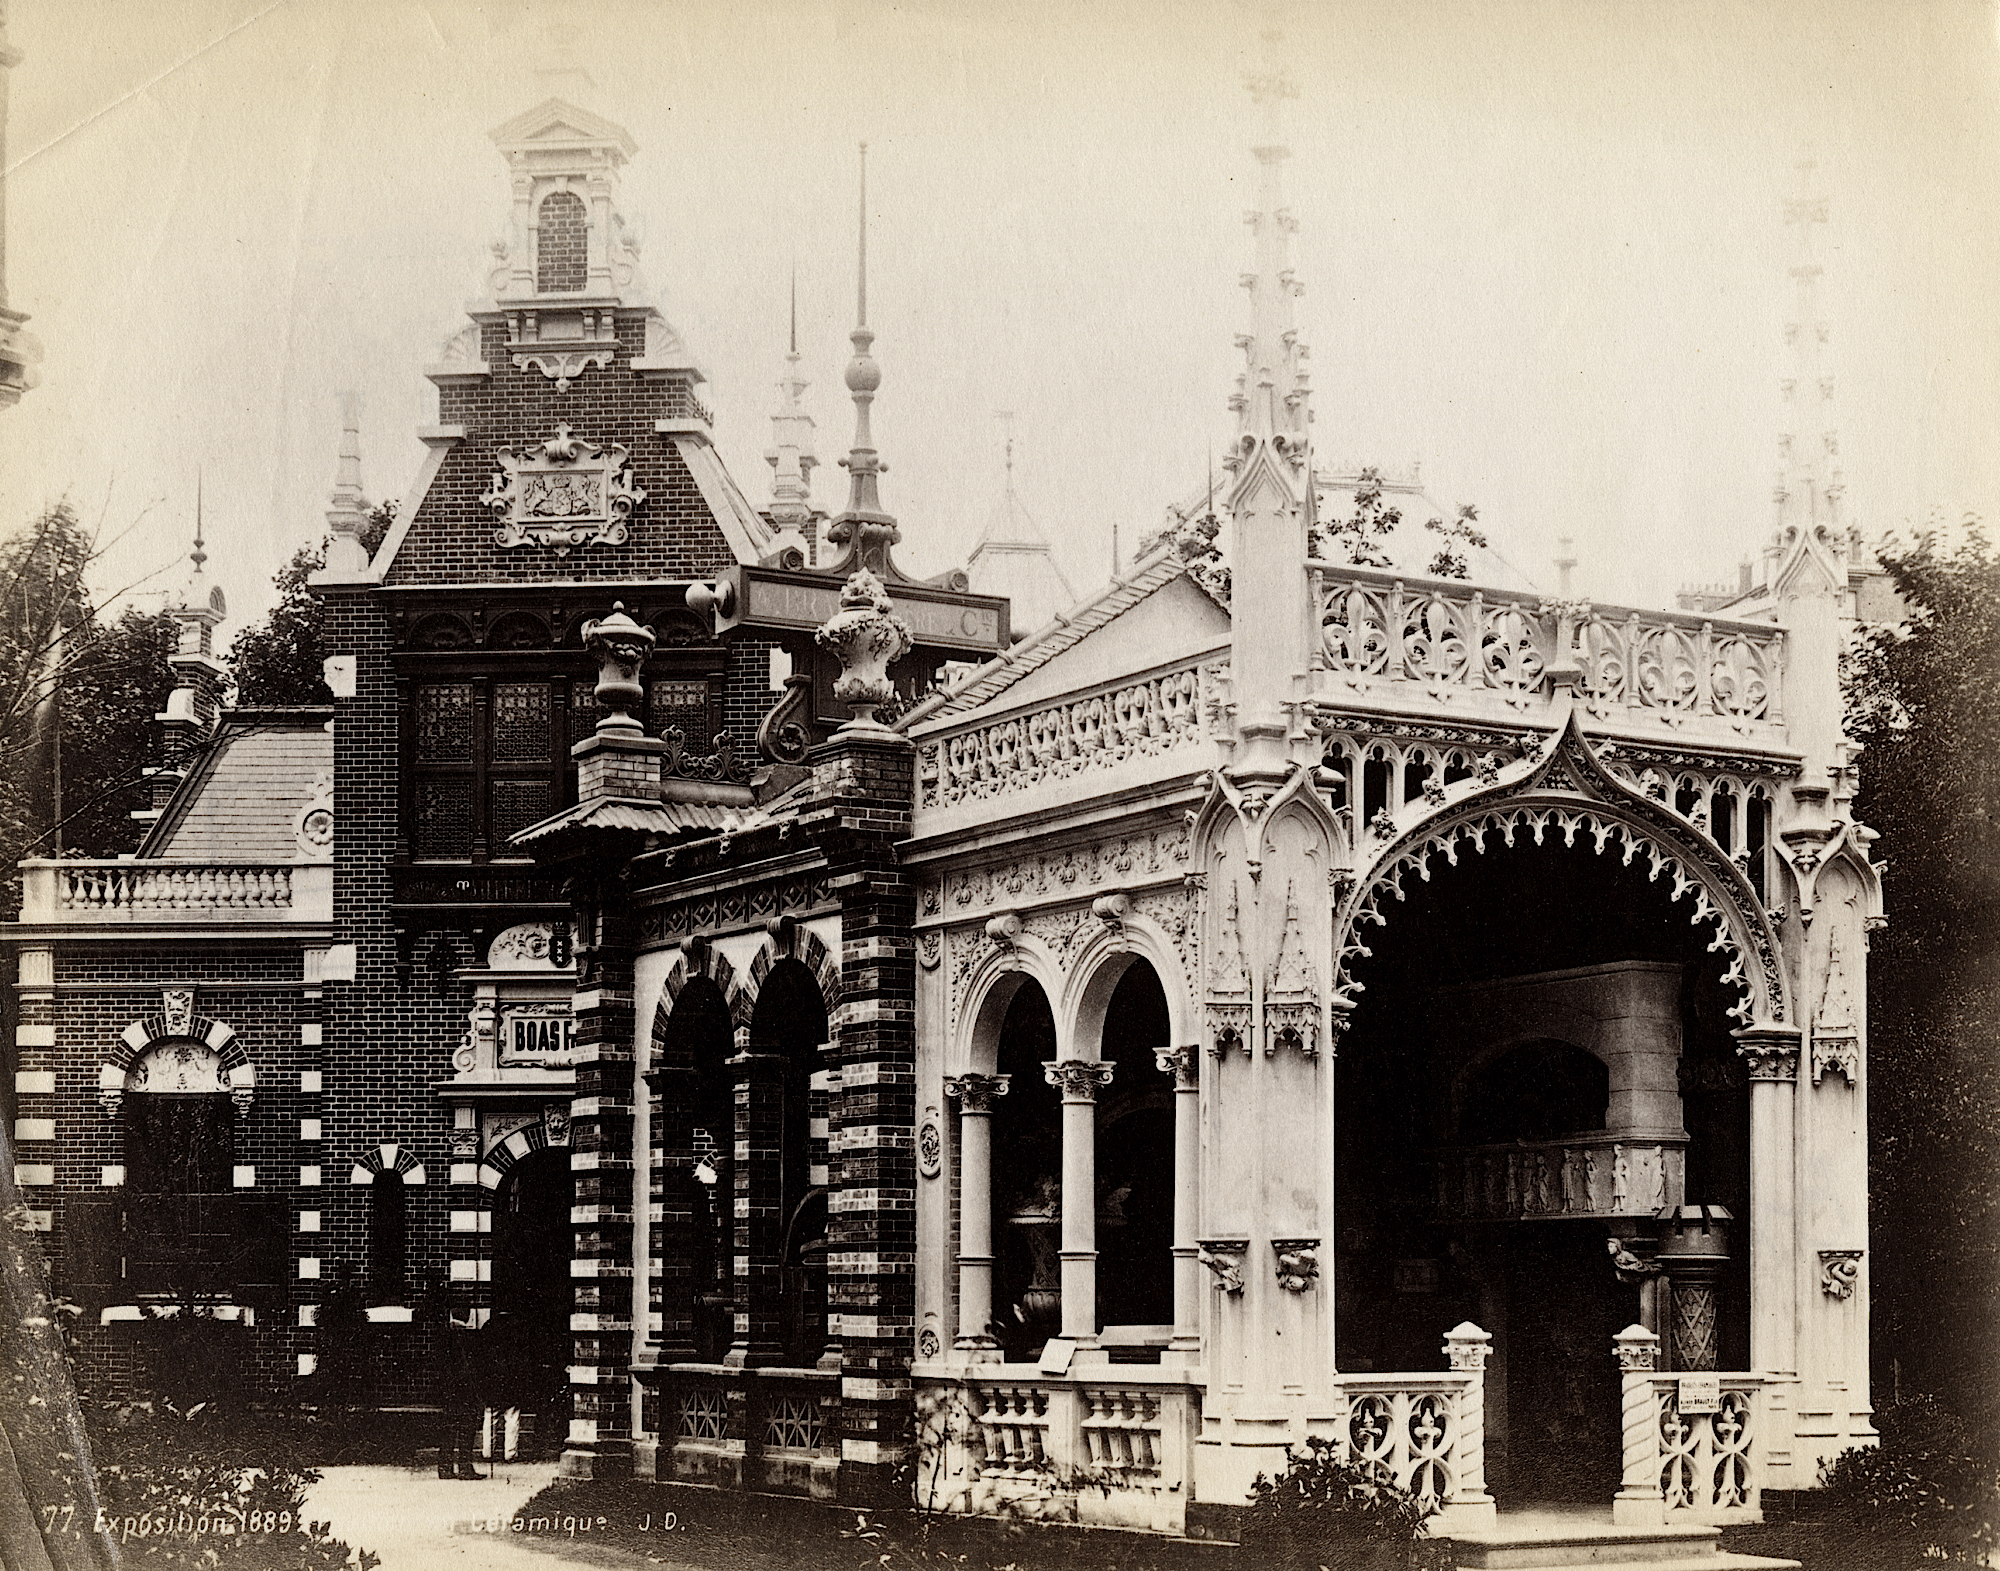 8" x 10" Photo Historic 1889 Pavilion of Bolivia Paris Exposition 